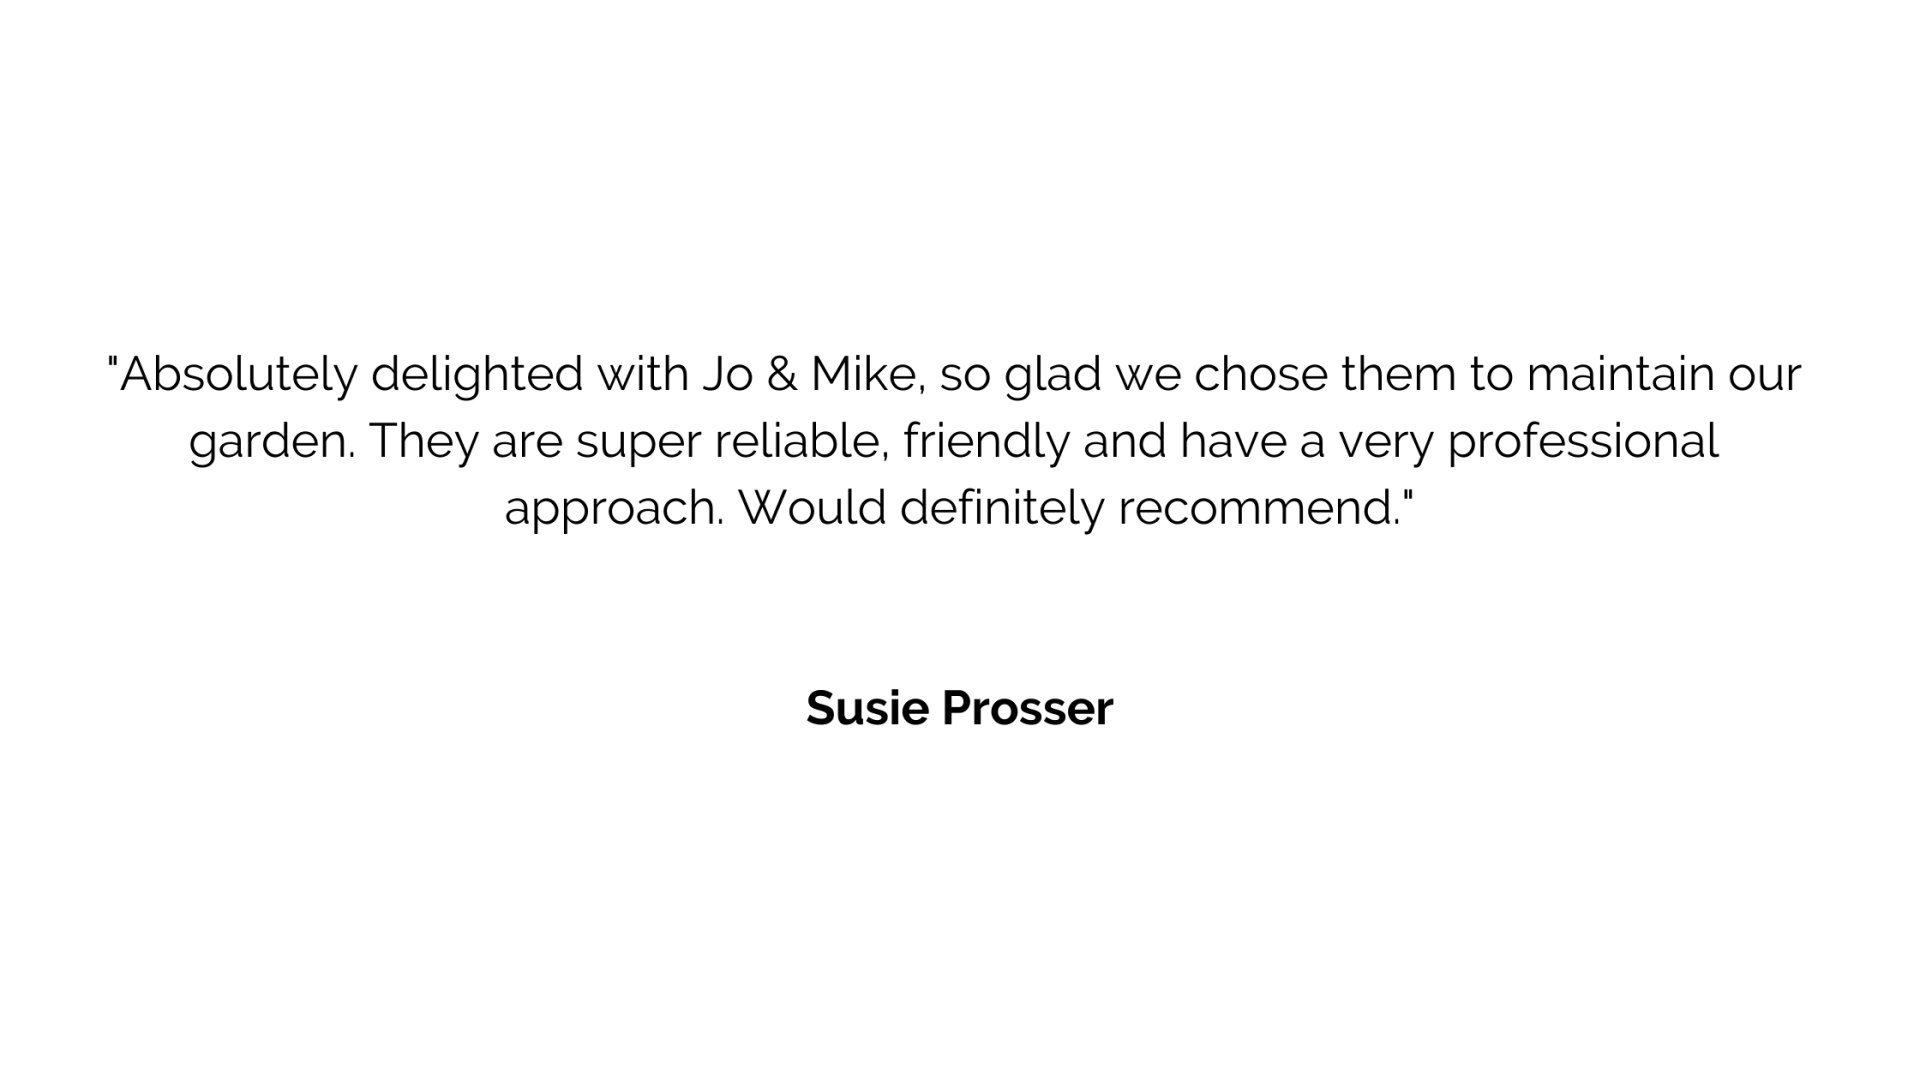 Susie Prosser